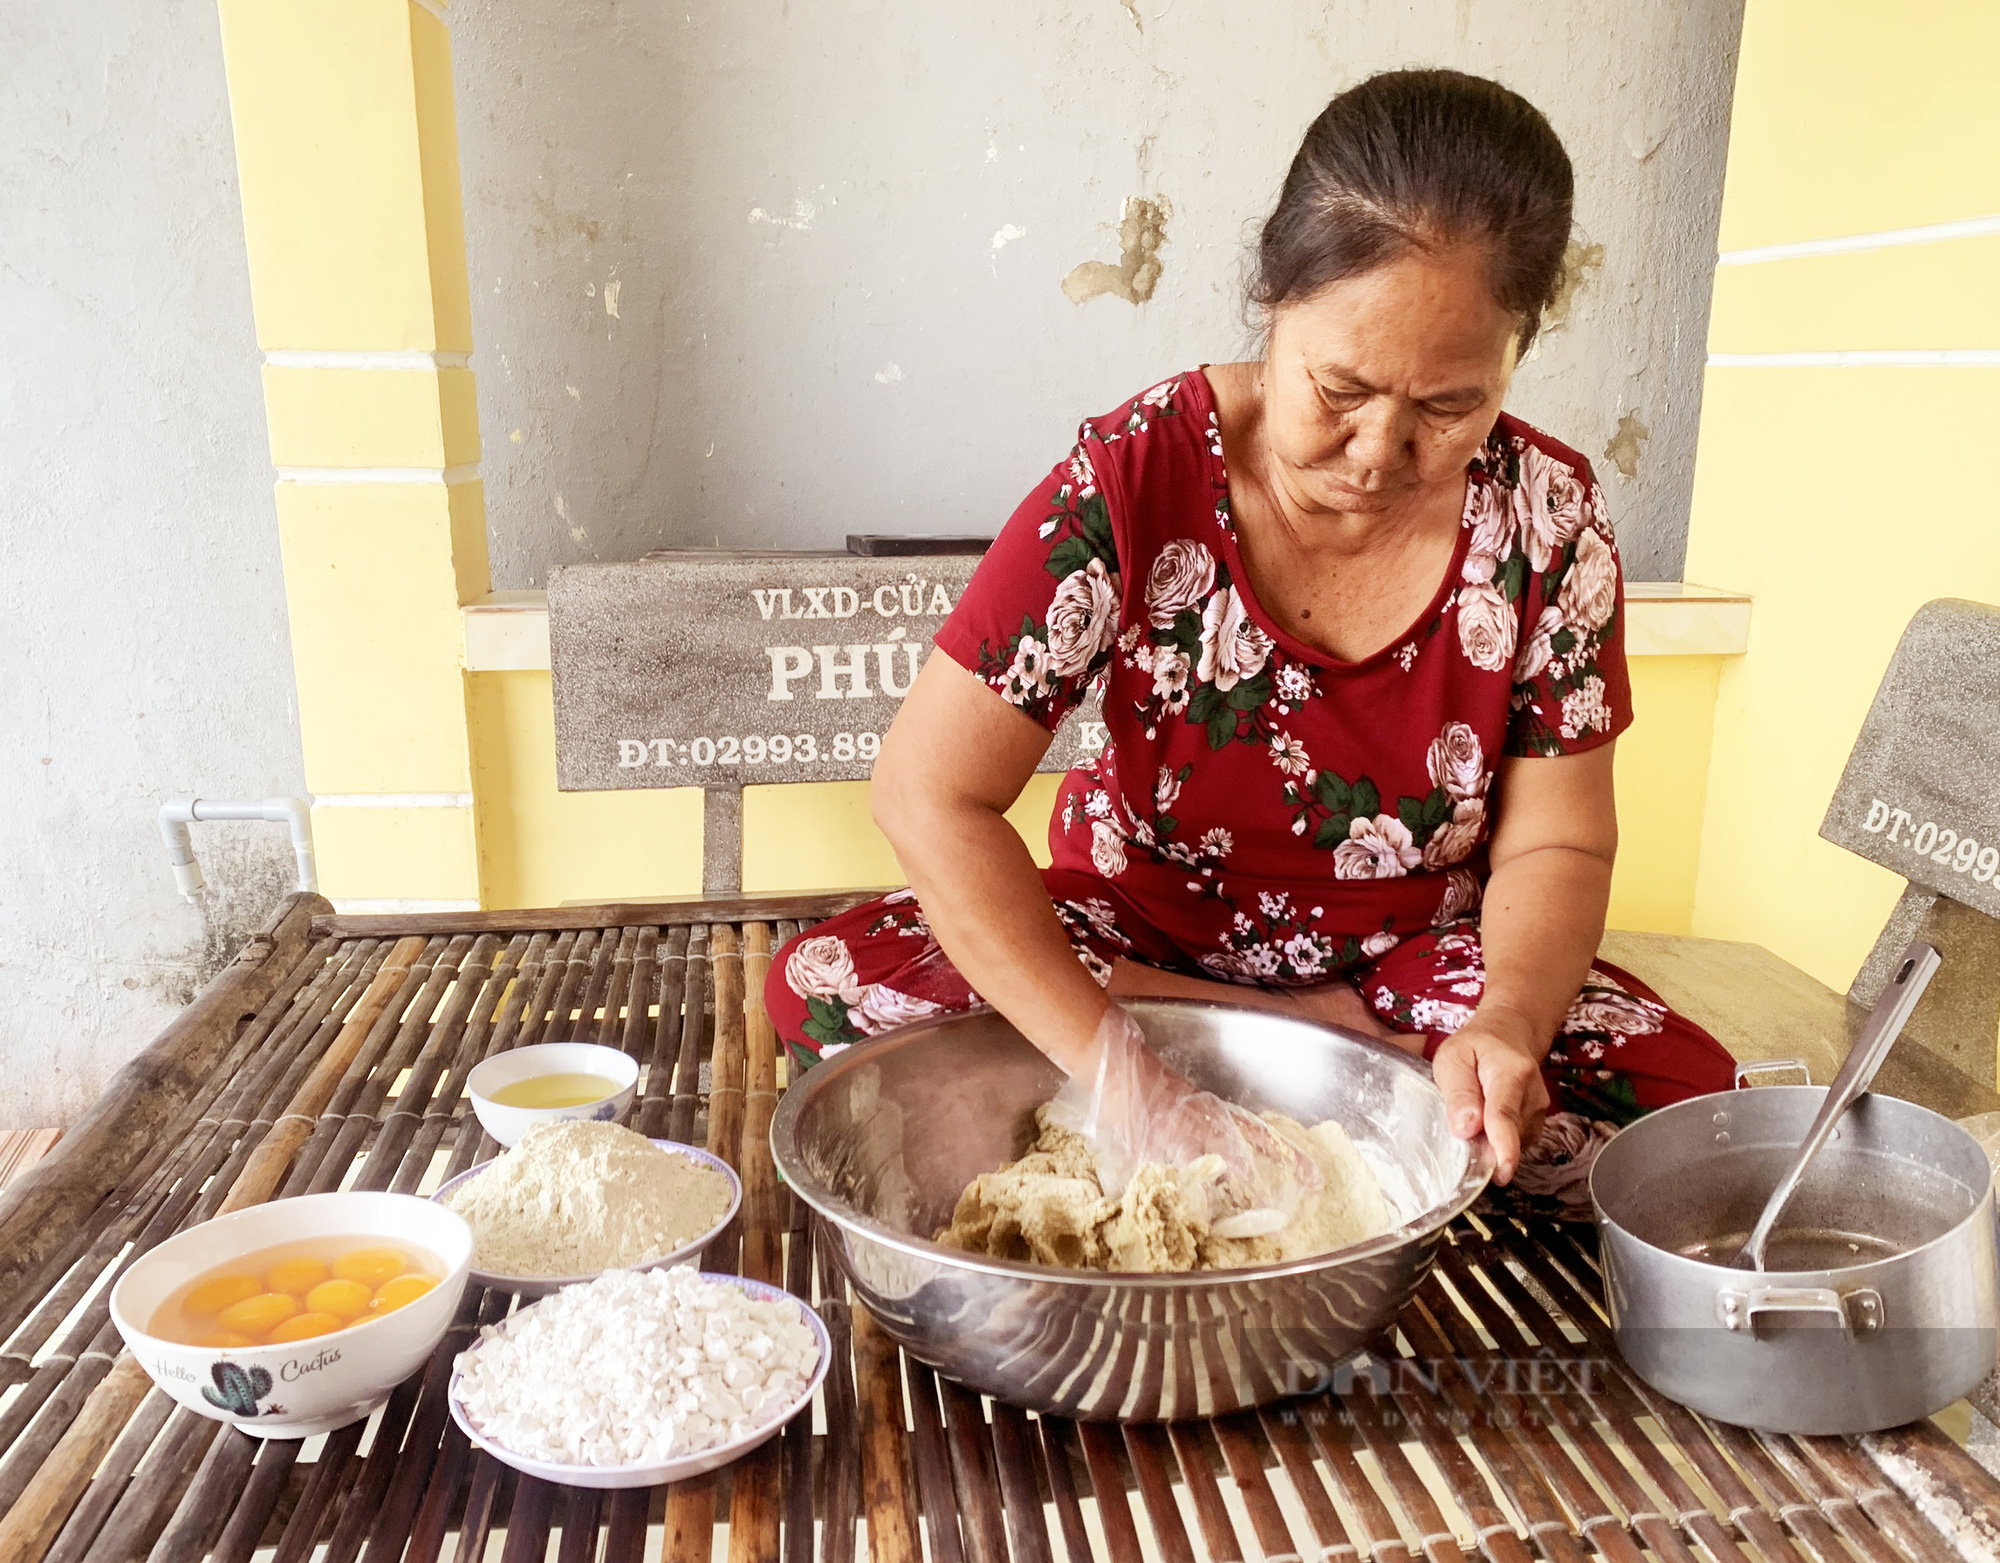 Thơm ngon những loại bánh quen mà lạ của người Khmer - Ảnh 2.